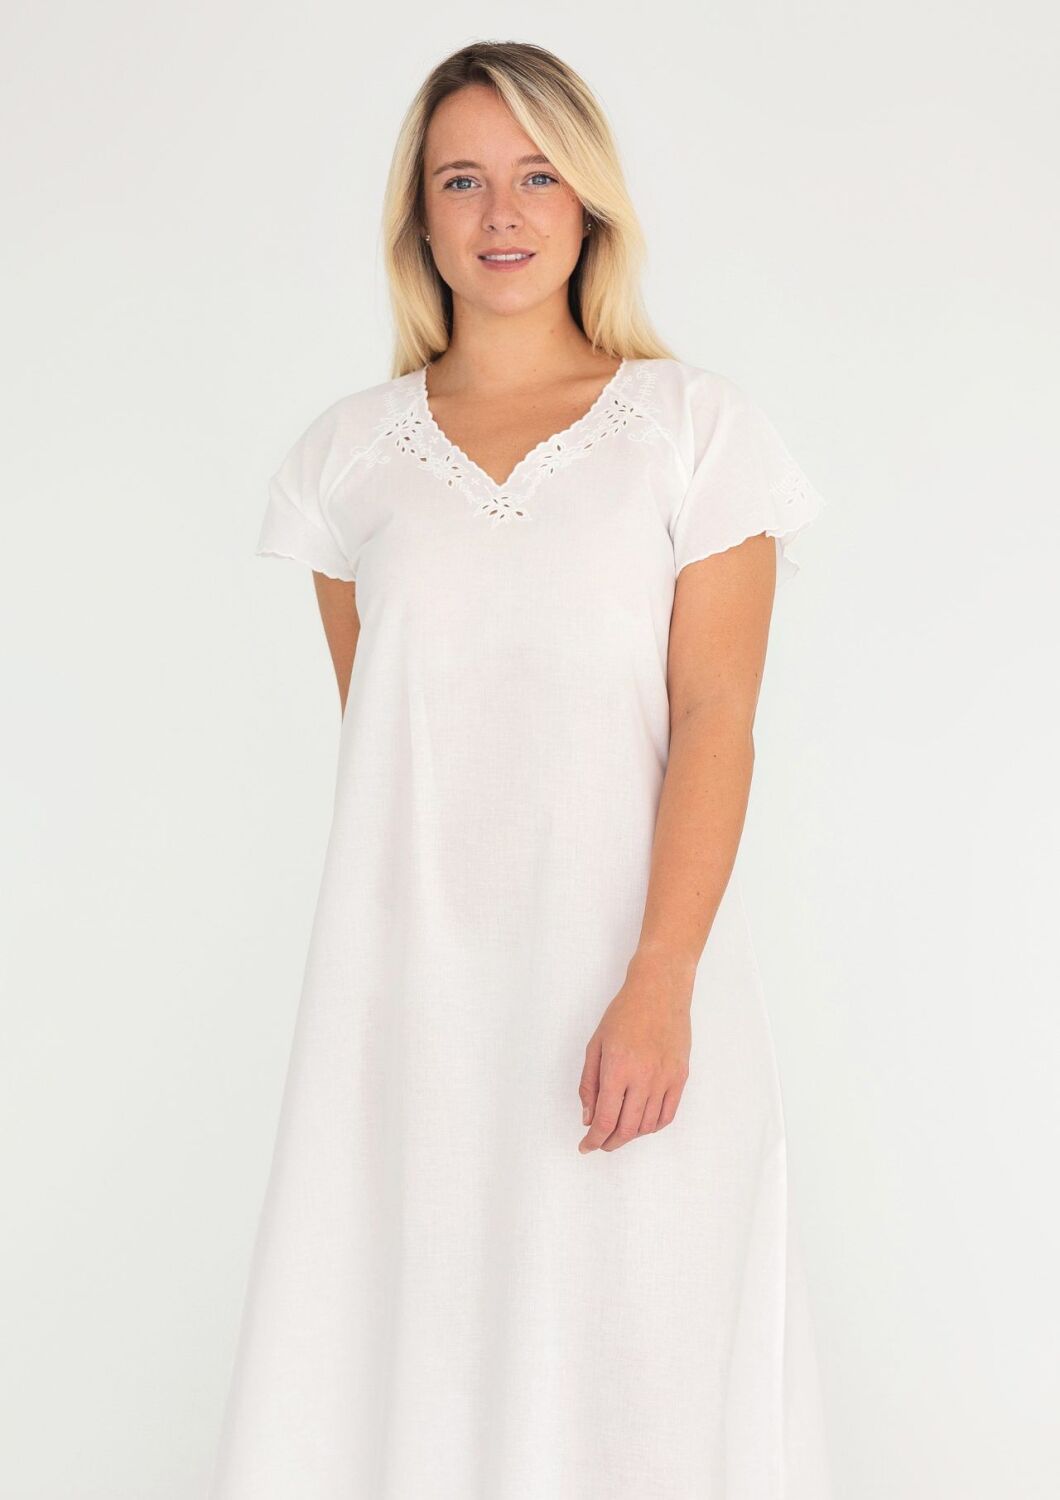 Elegant White Cotton Nightgown for Women